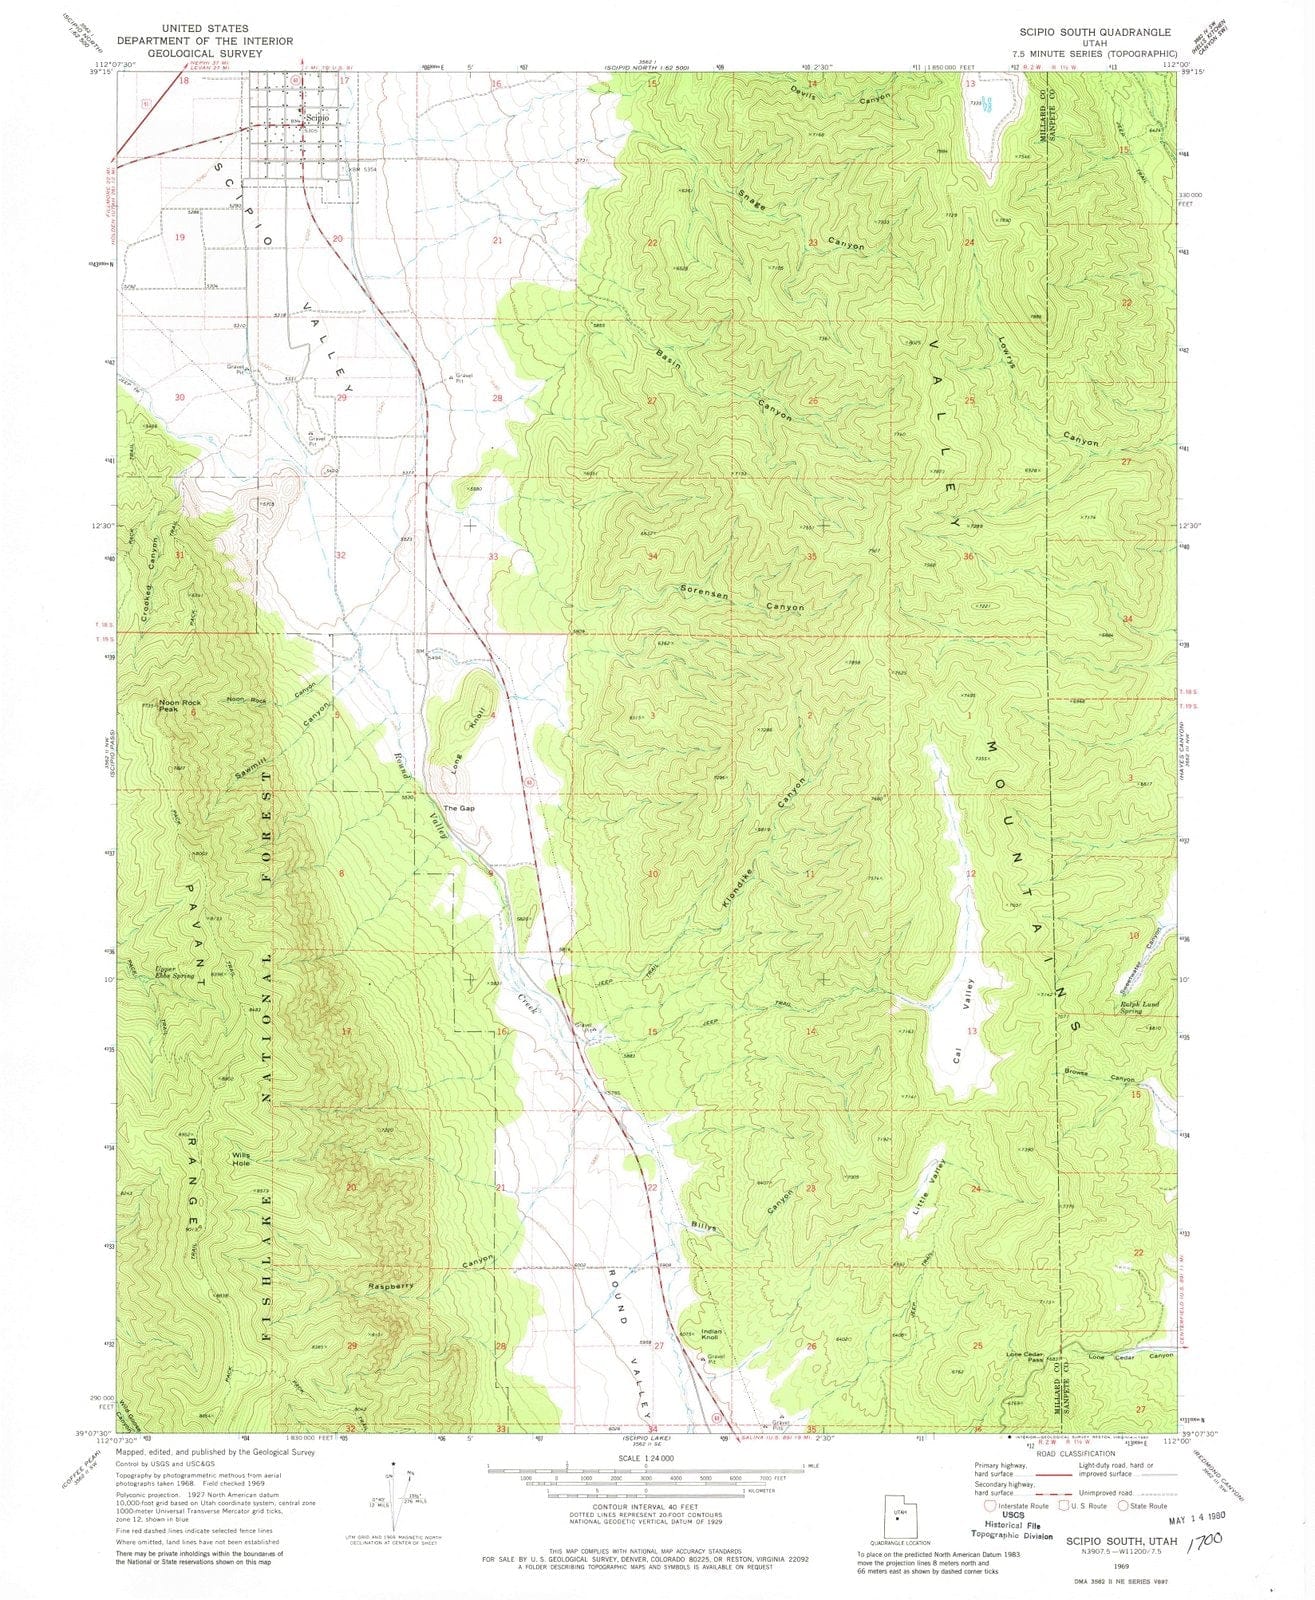 1969 Scipio South, UT - Utah - USGS Topographic Map